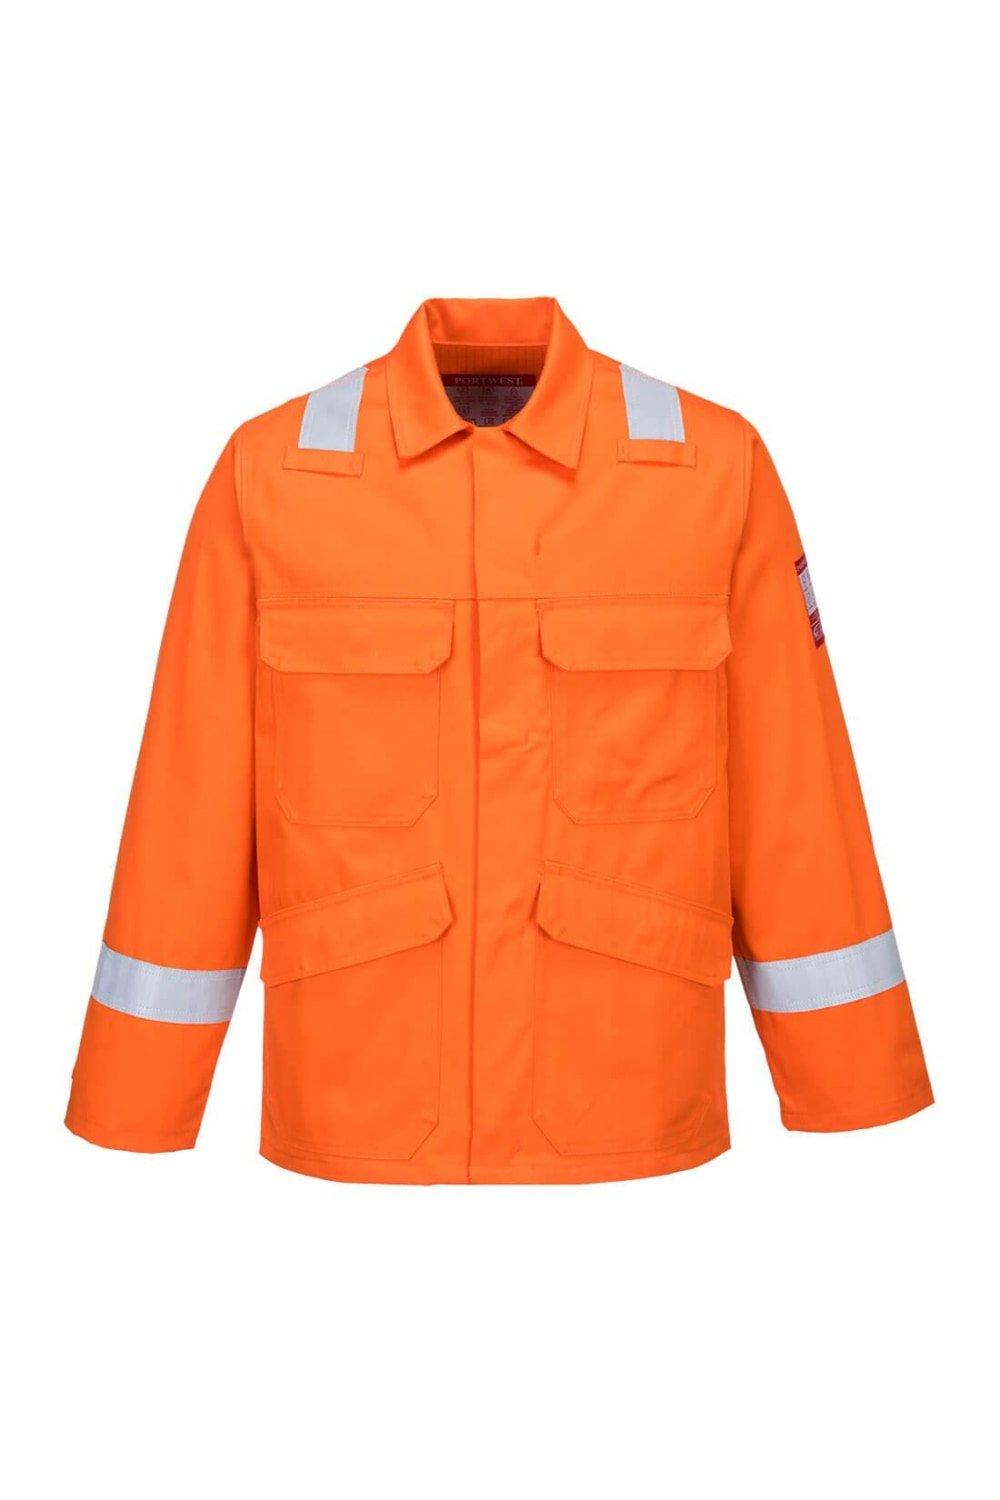 Куртка FR25 Bizflame Plus Portwest, оранжевый